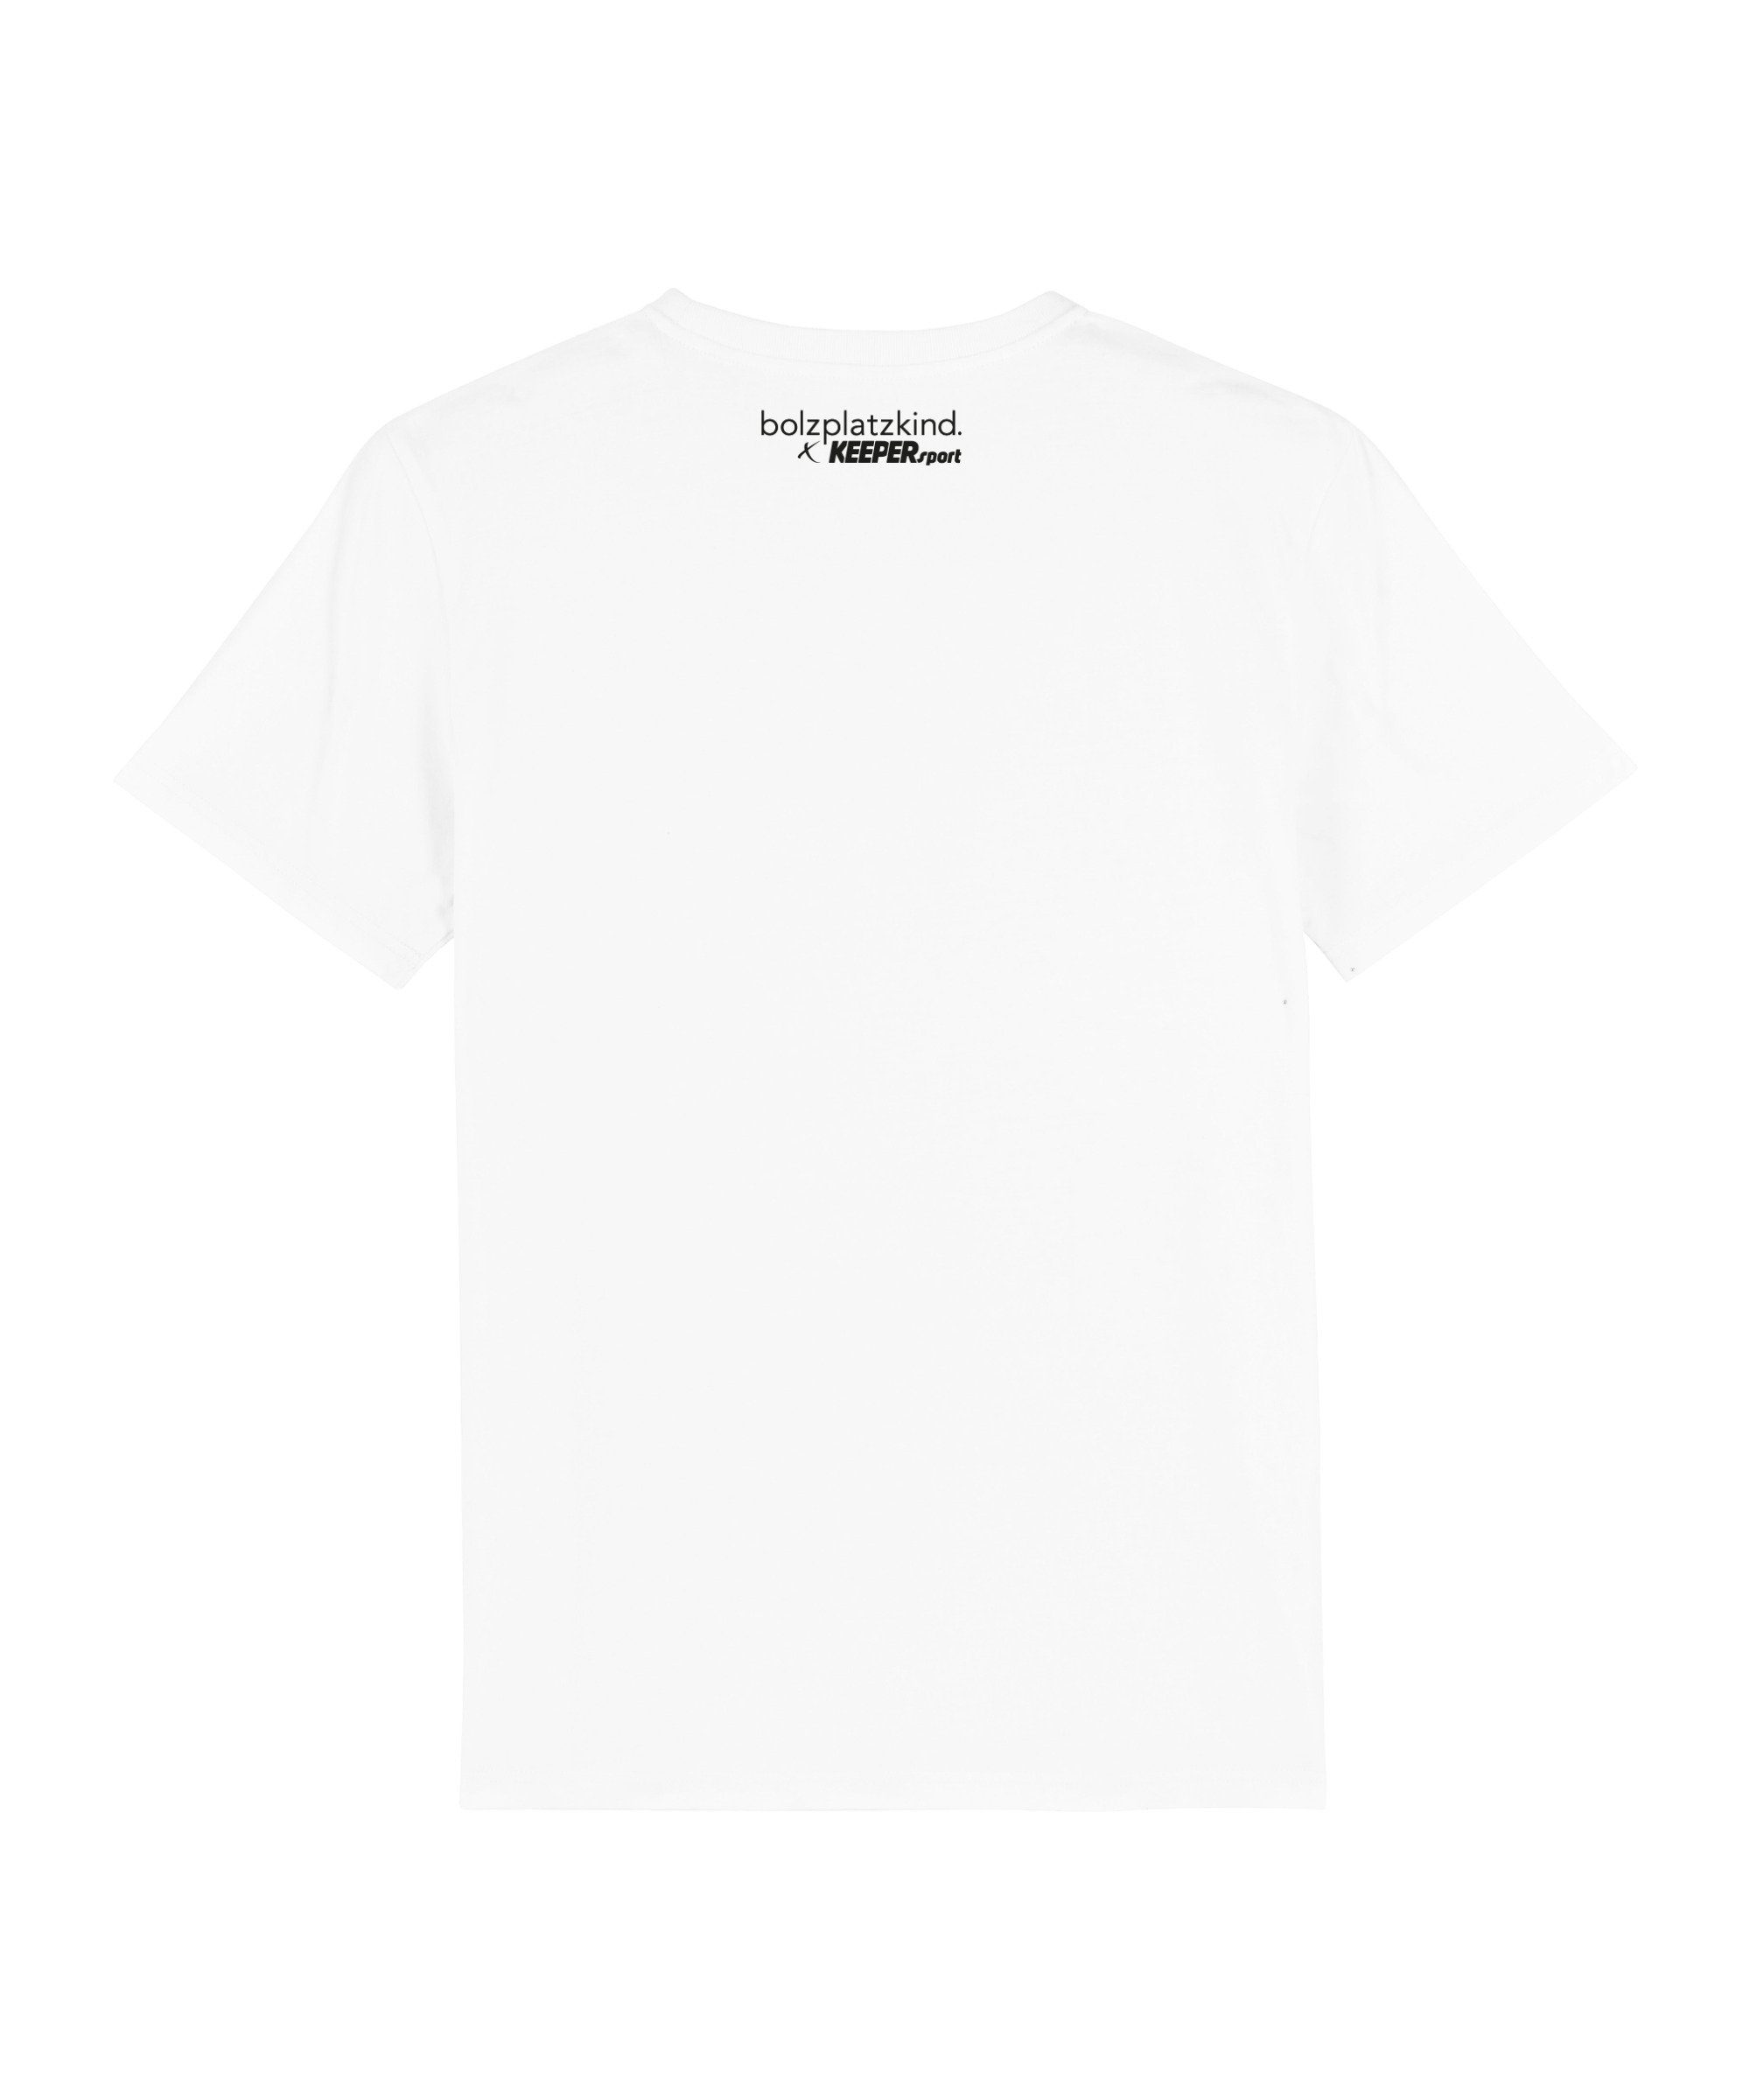 weiss Keepersport T-Shirt X T-Shirt Bolzplatzkind default "Story"